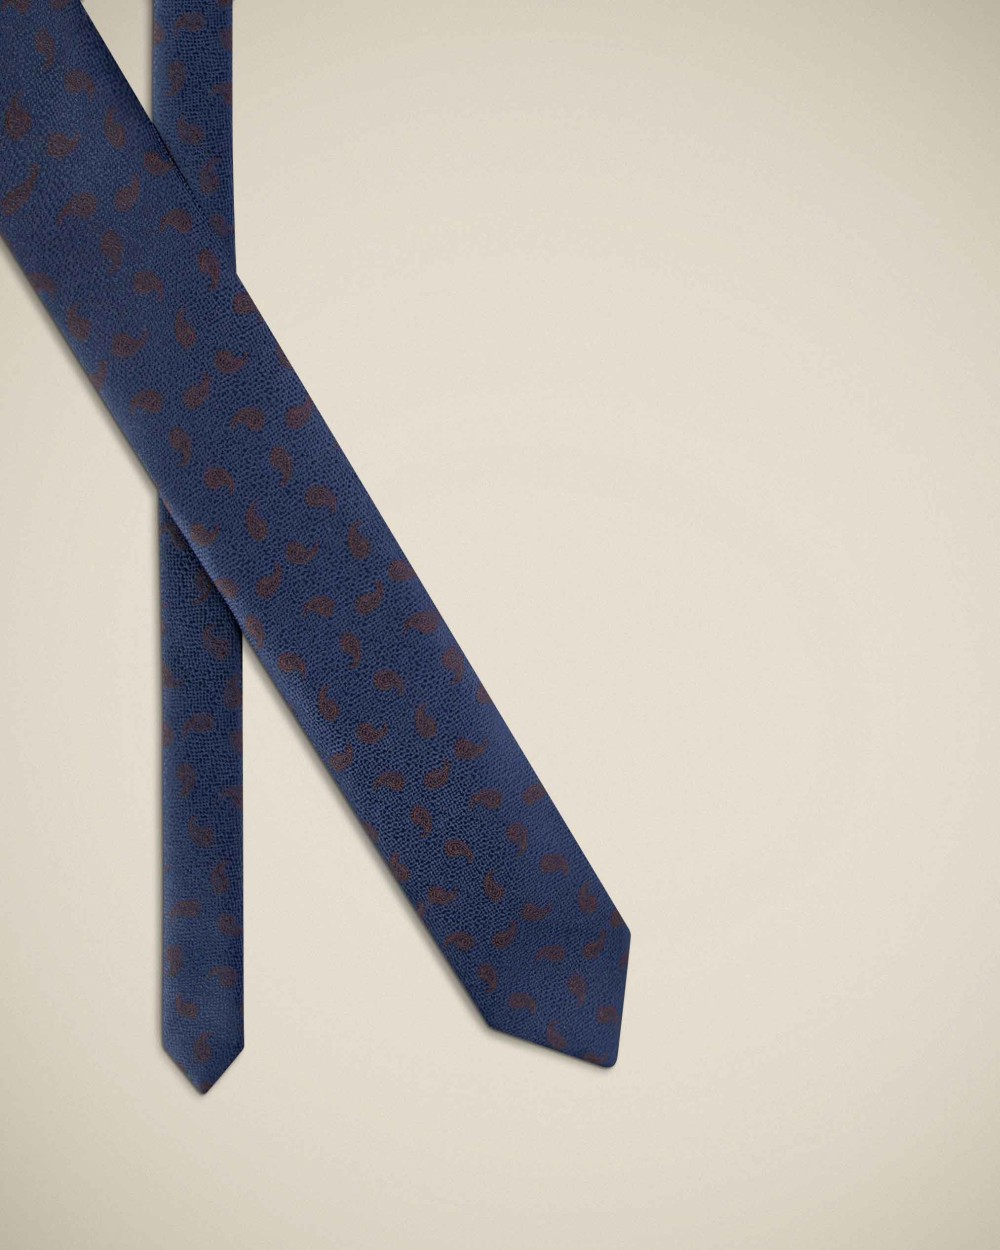 ست کراوات و پوشت 100-3